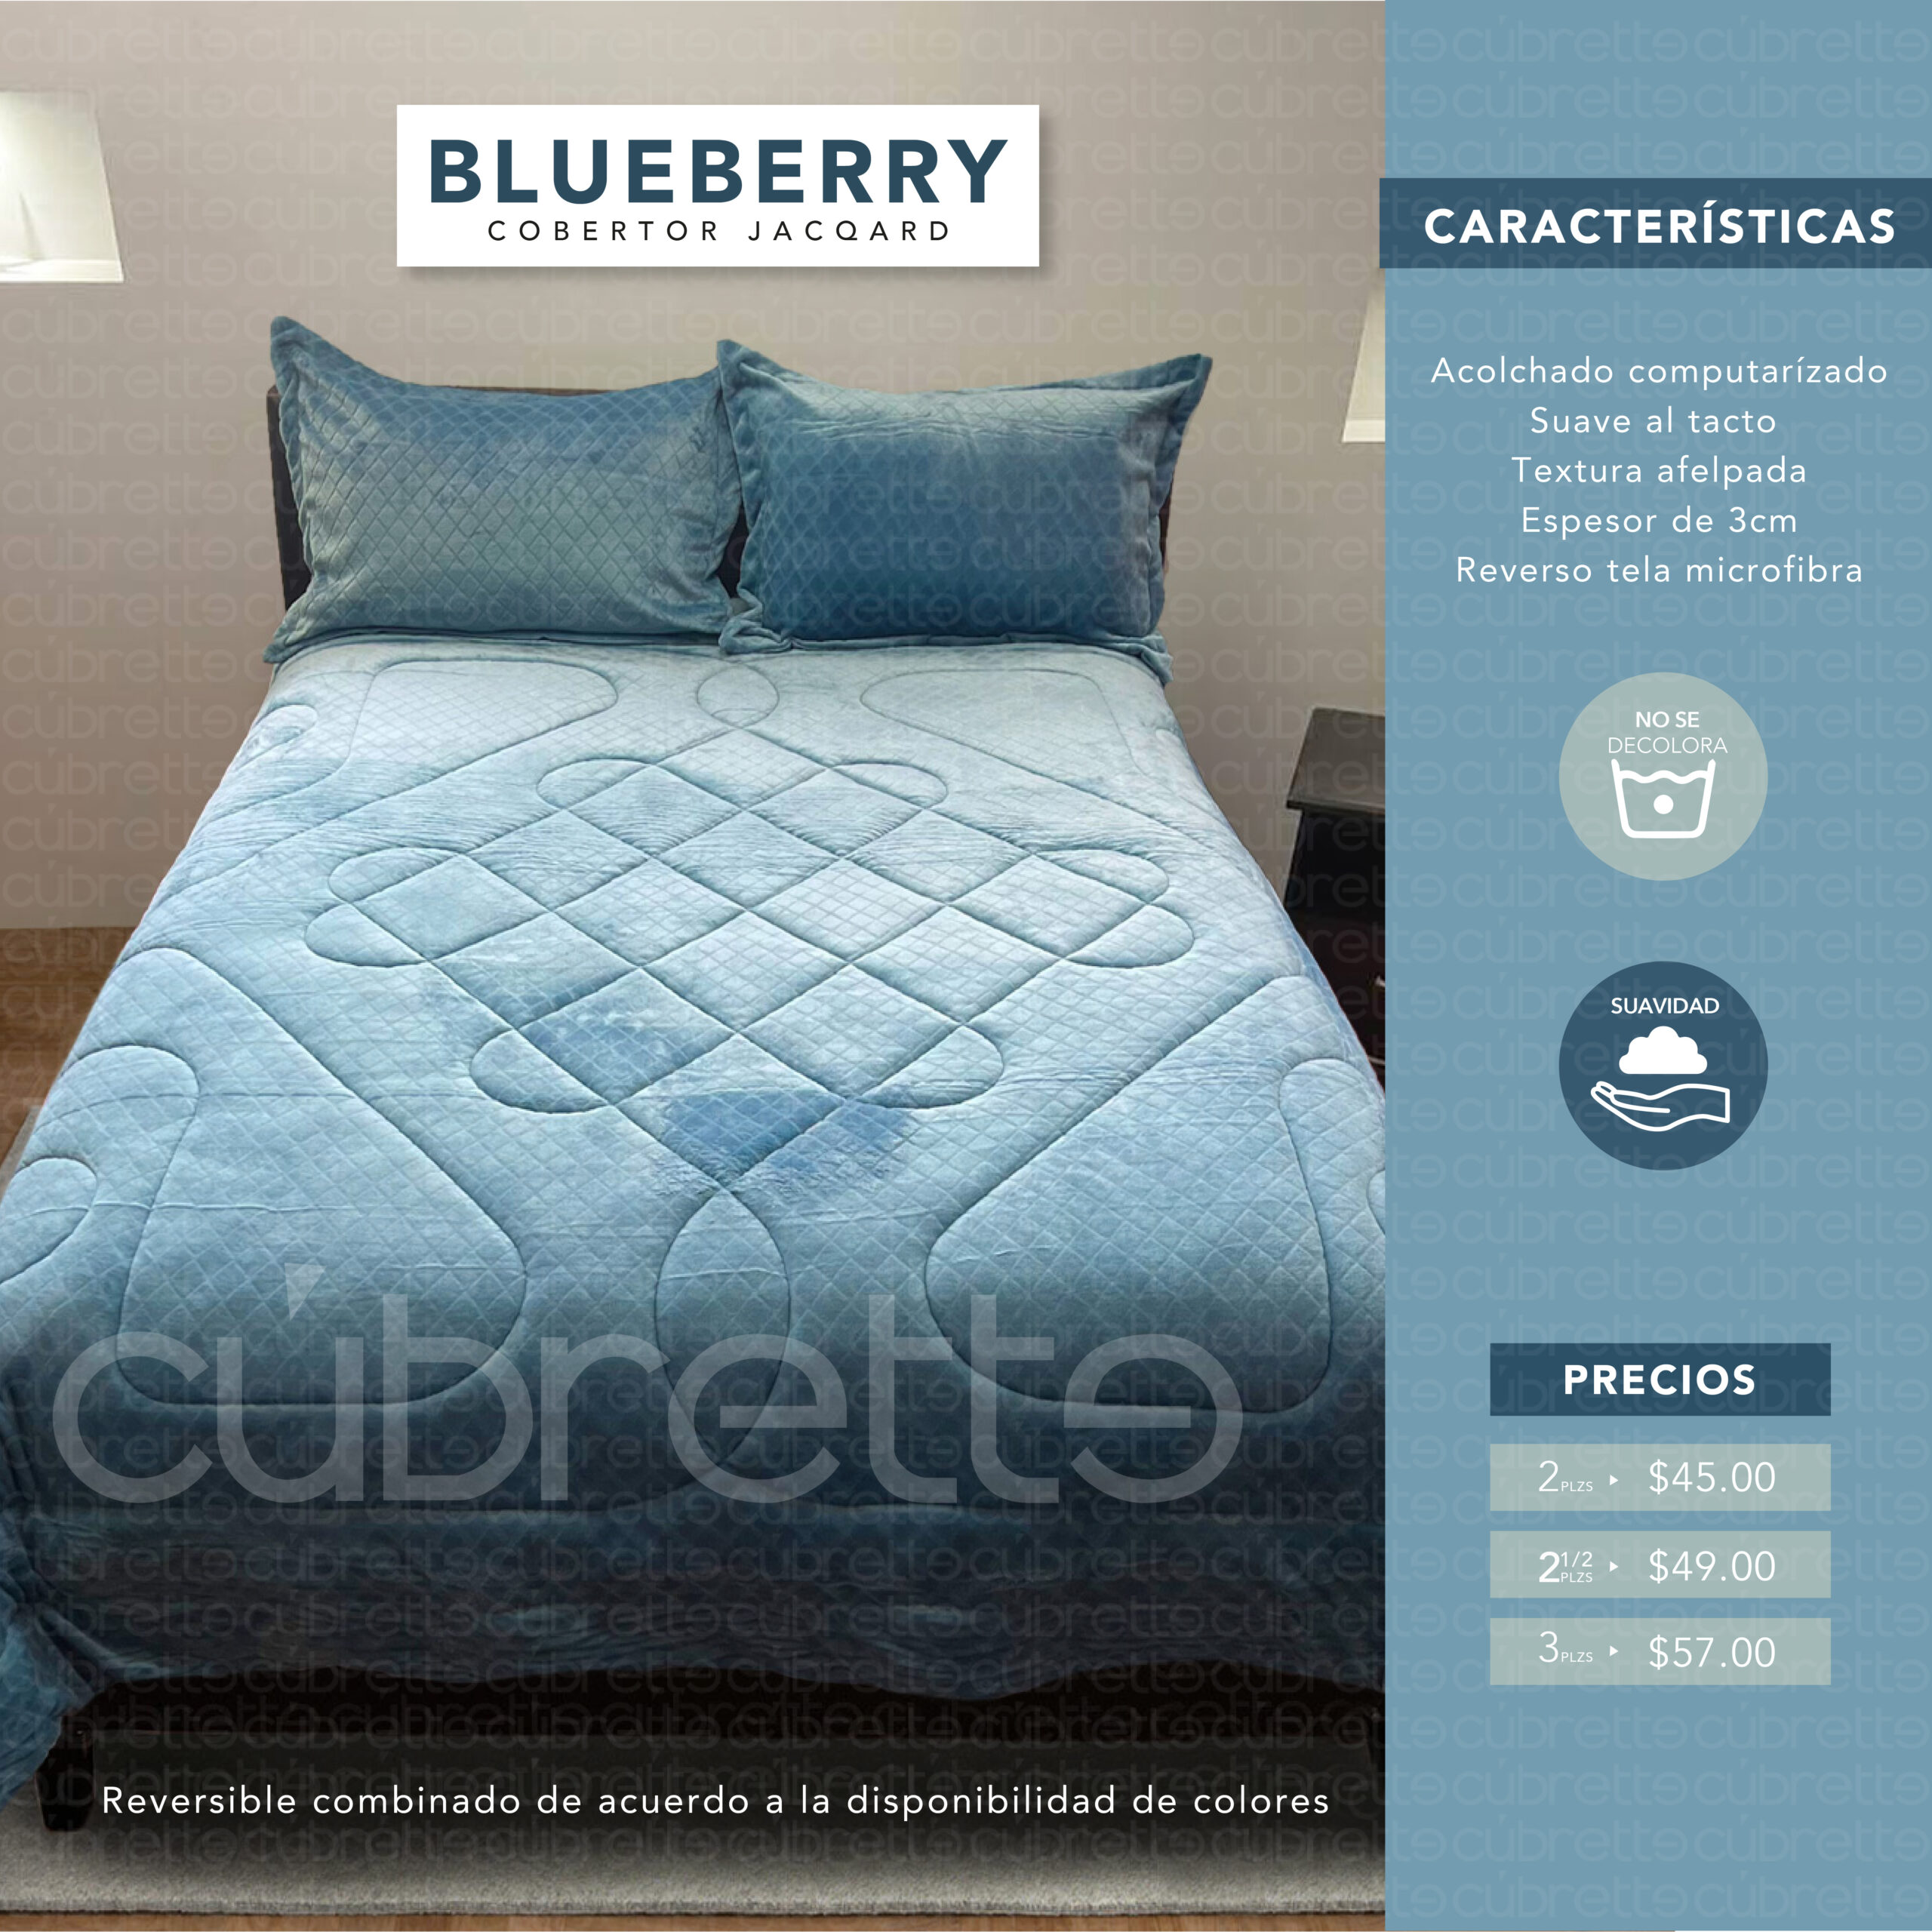 Cobertor Jacqard Blueberry